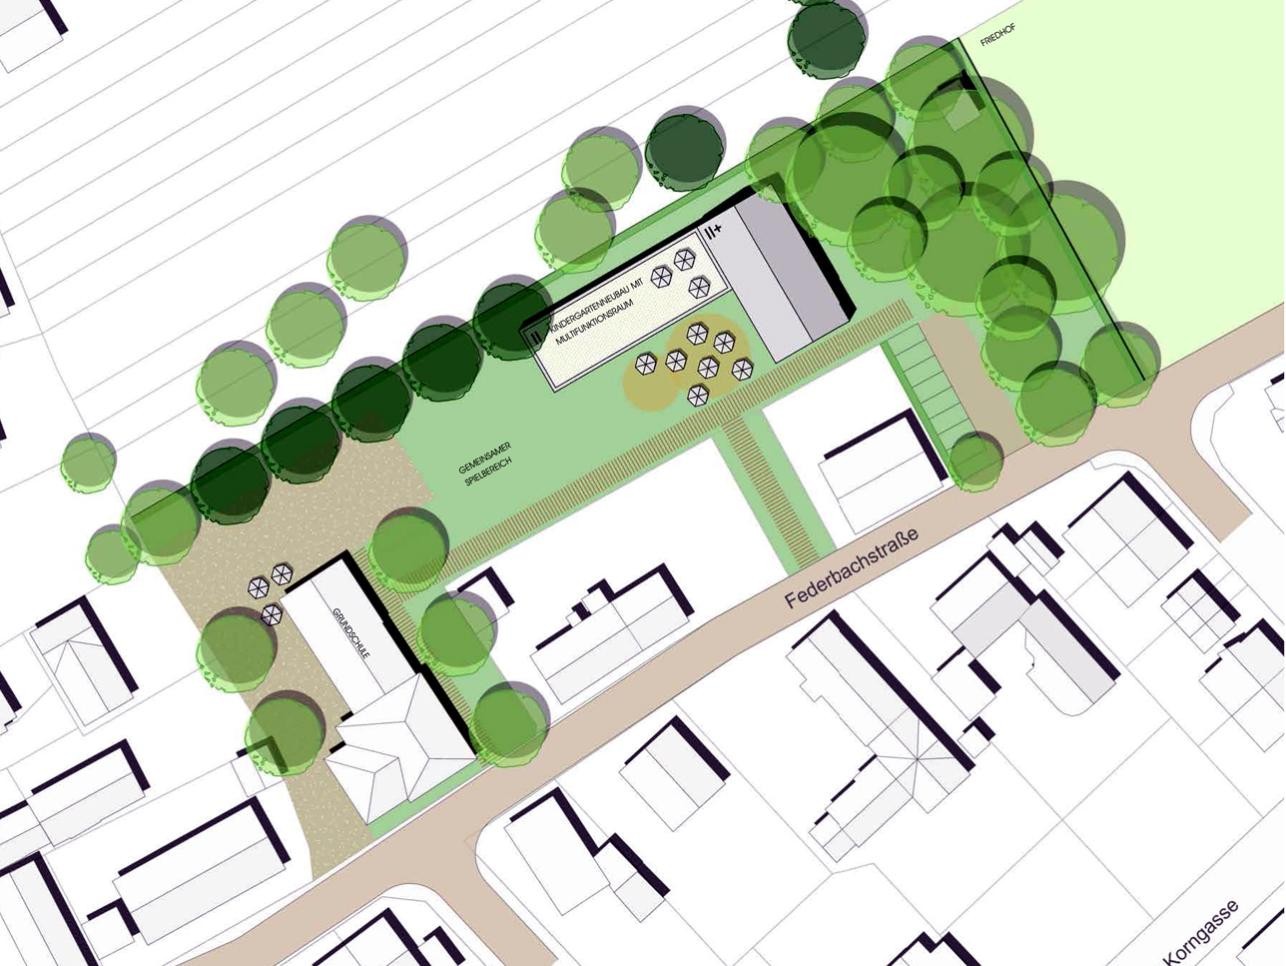 Plan du nouveau centre de formation Rauental avec les rues, les maisons et les arbres